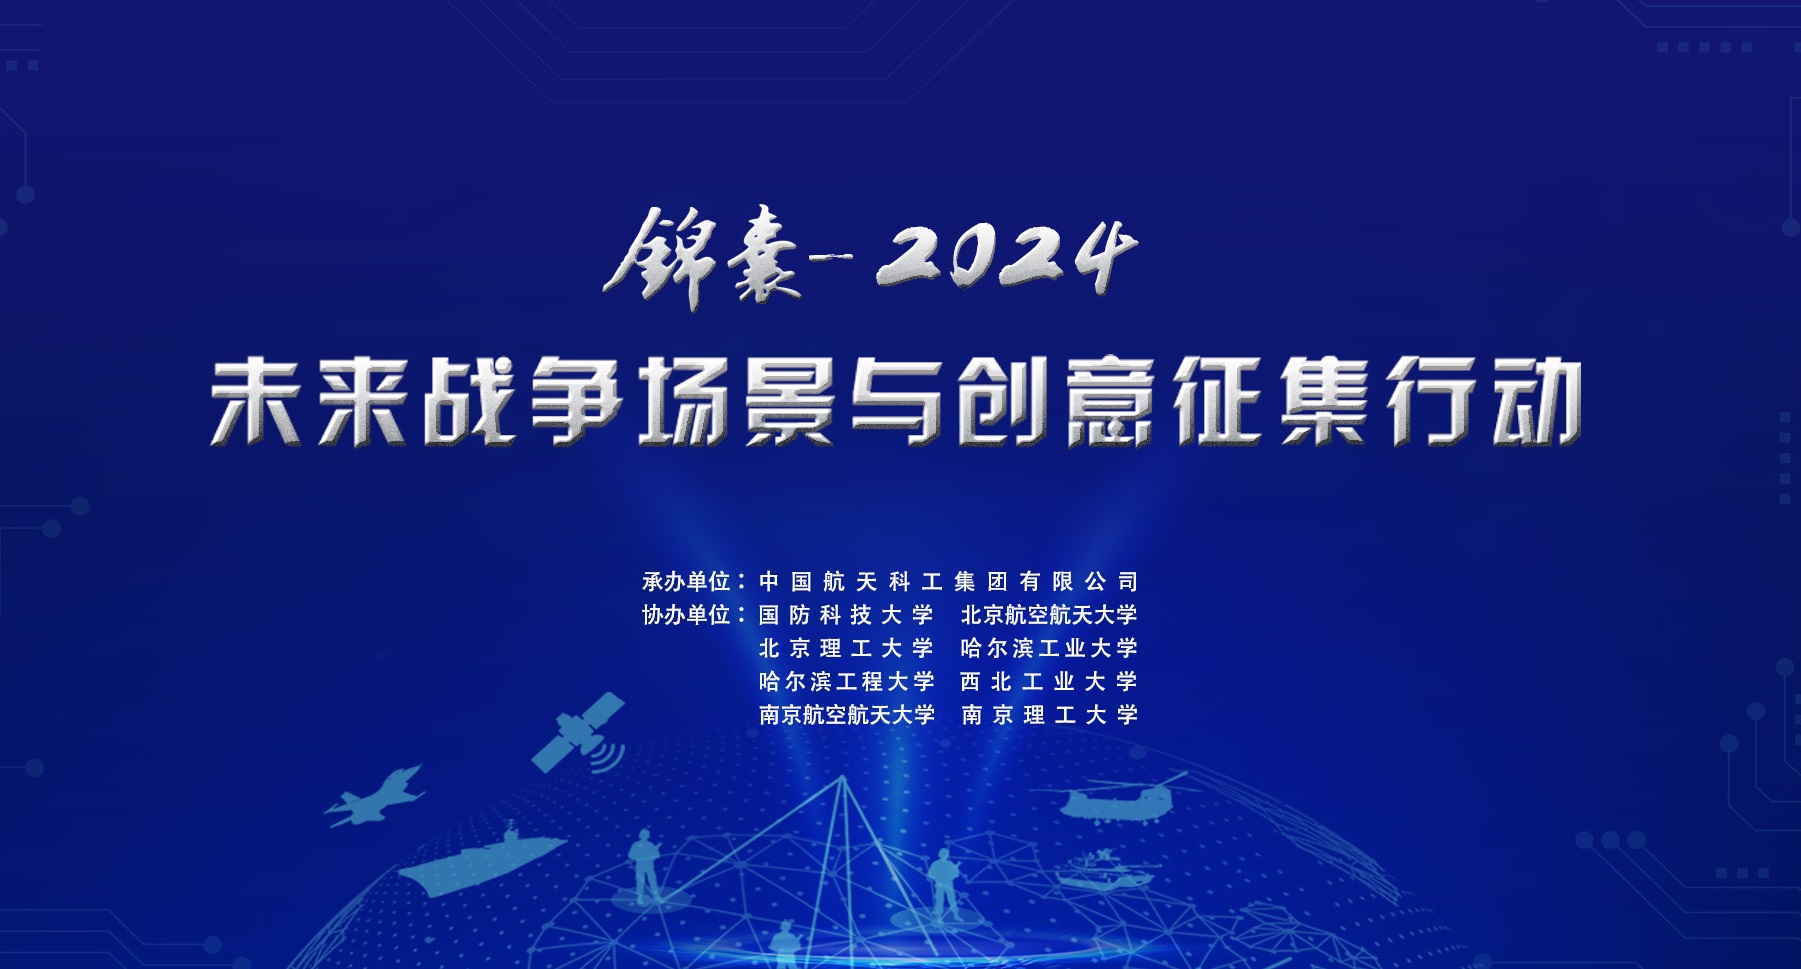 	     “锦囊-2024”未来战争场景与创意征集行动启动...
	     